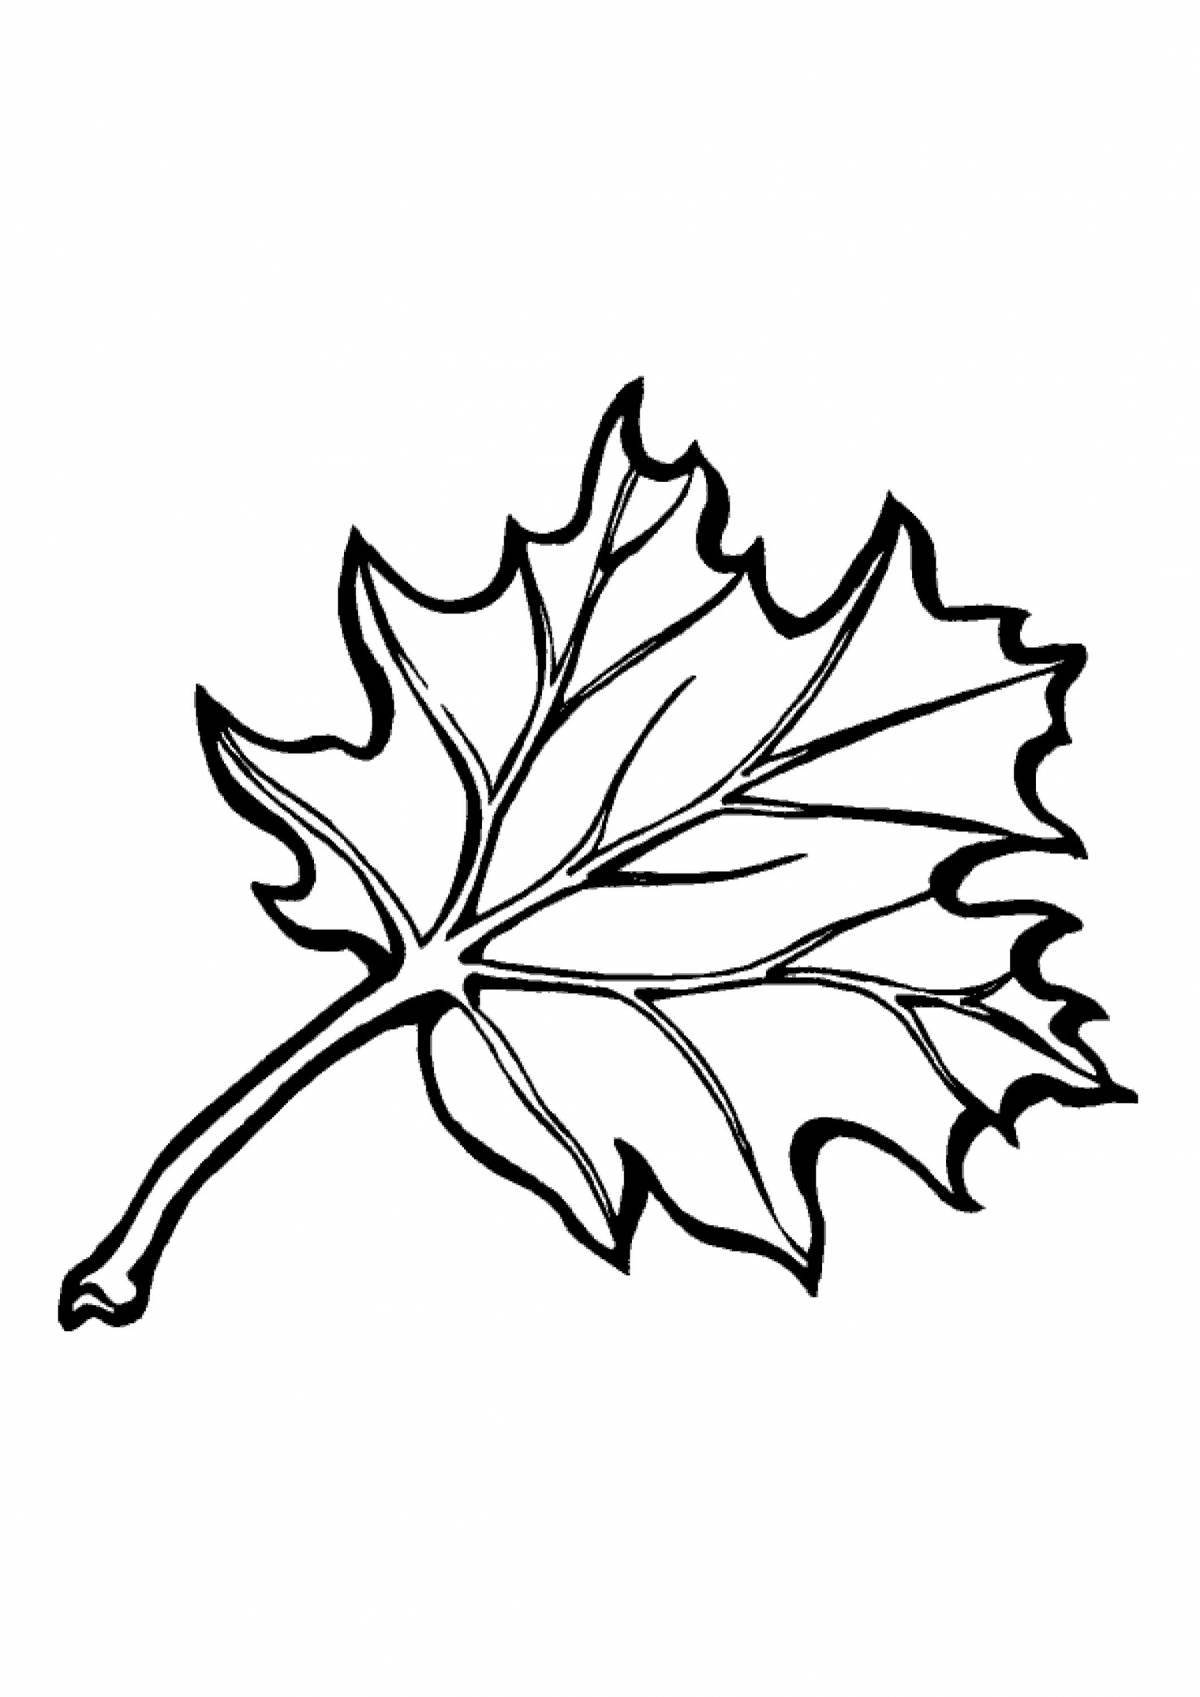 Maple leaf #8